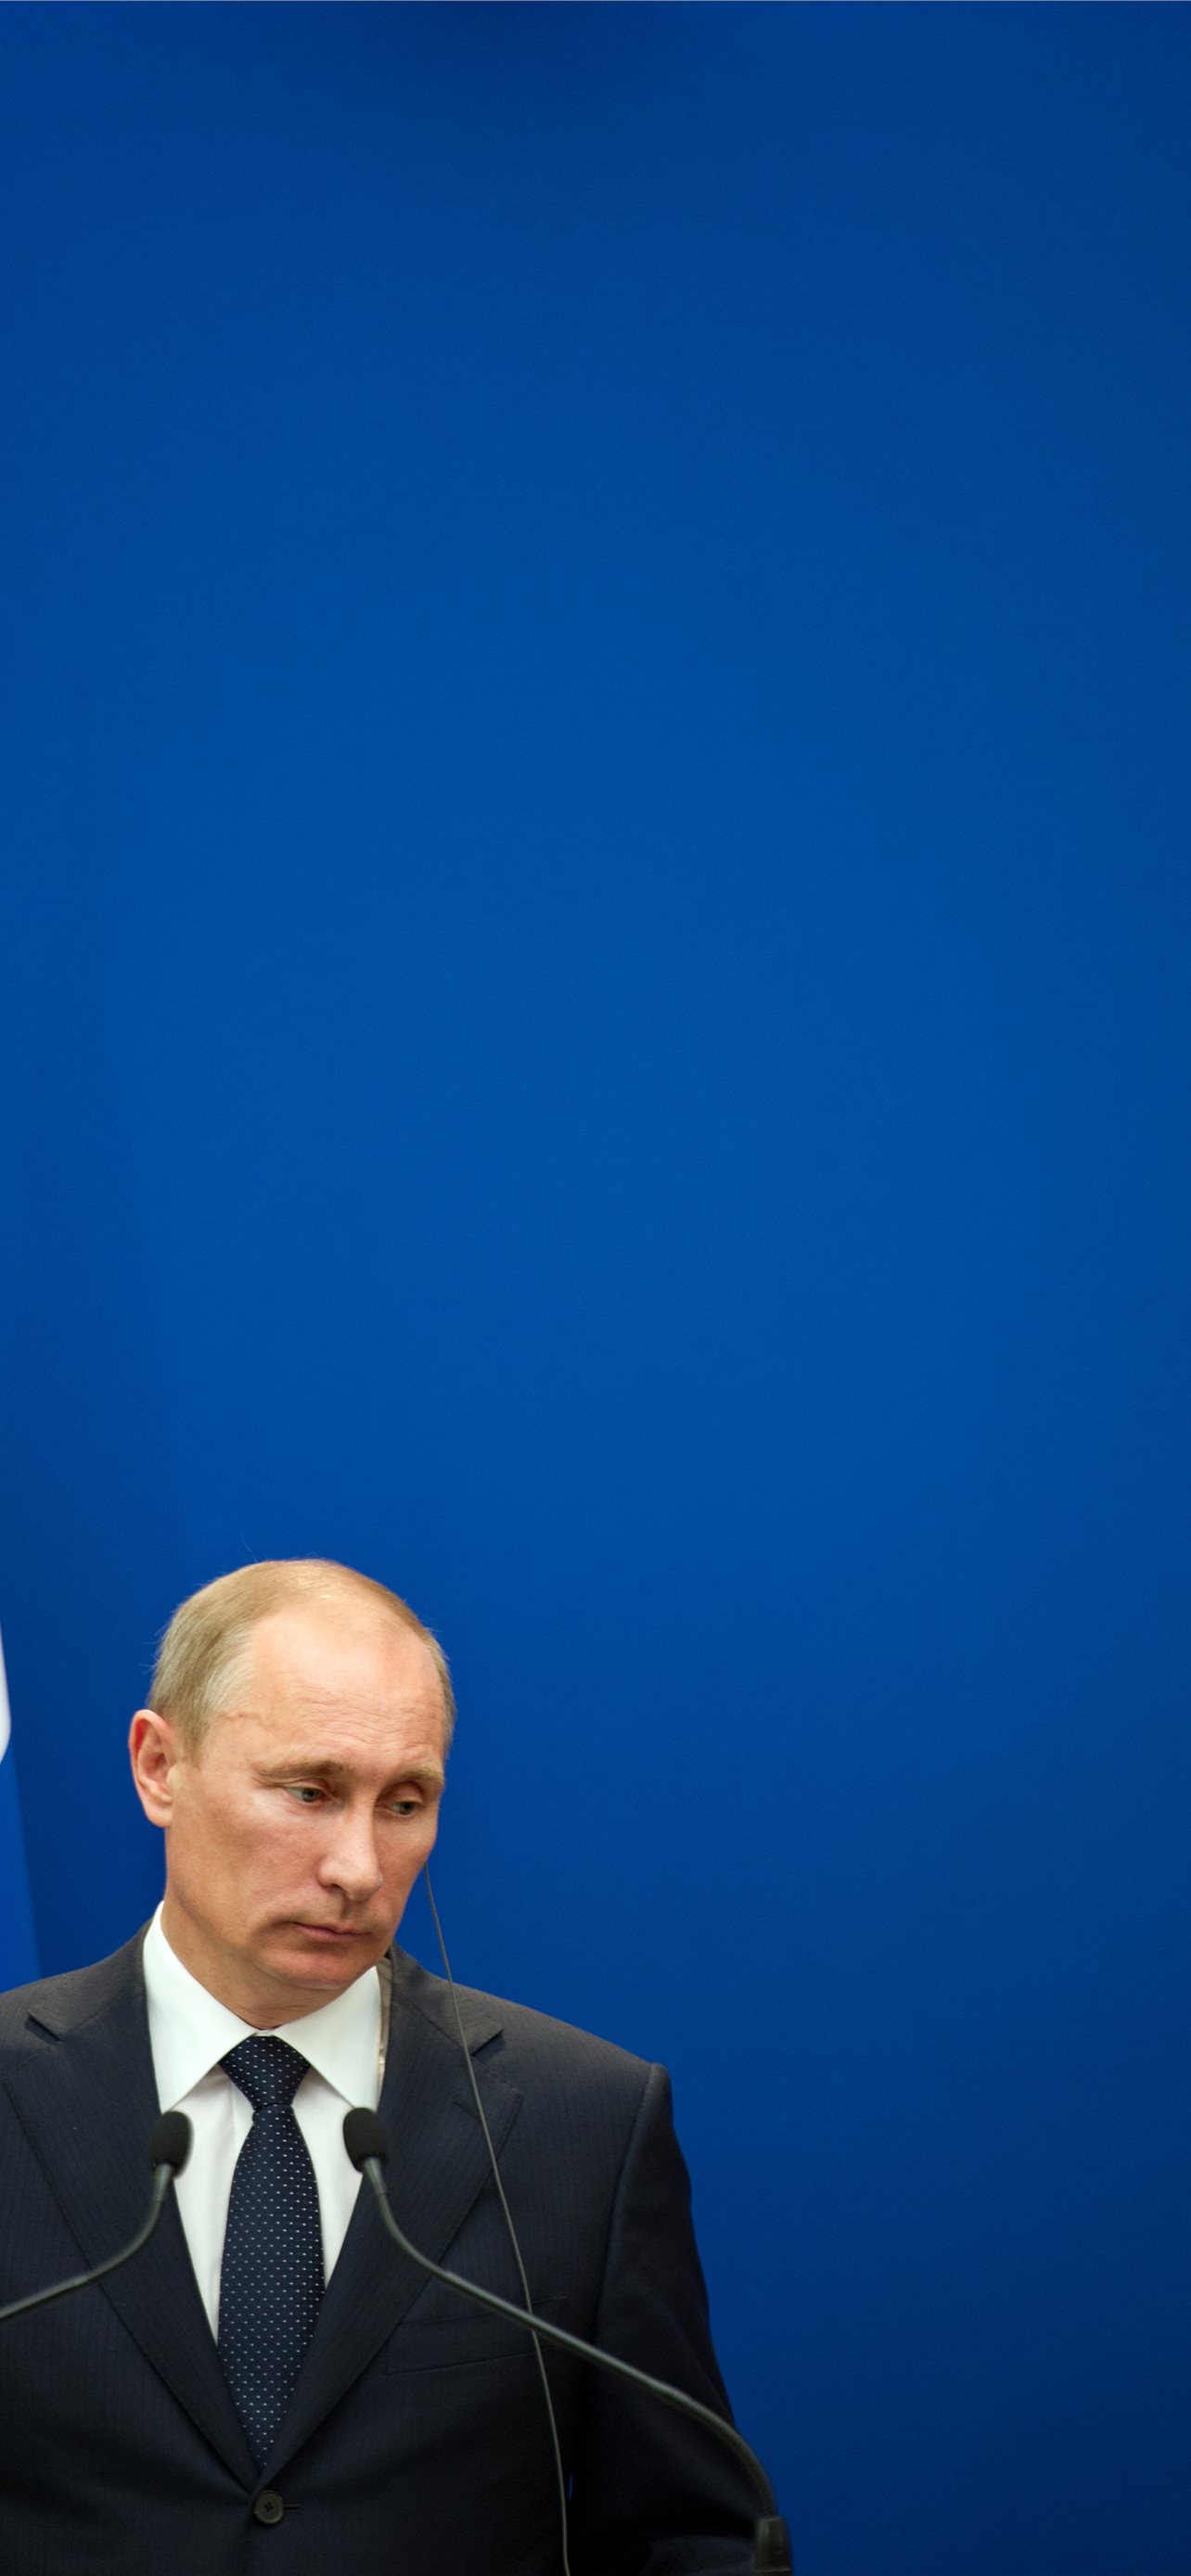 Vladimir Putin Iphone Wallpapers Free Download